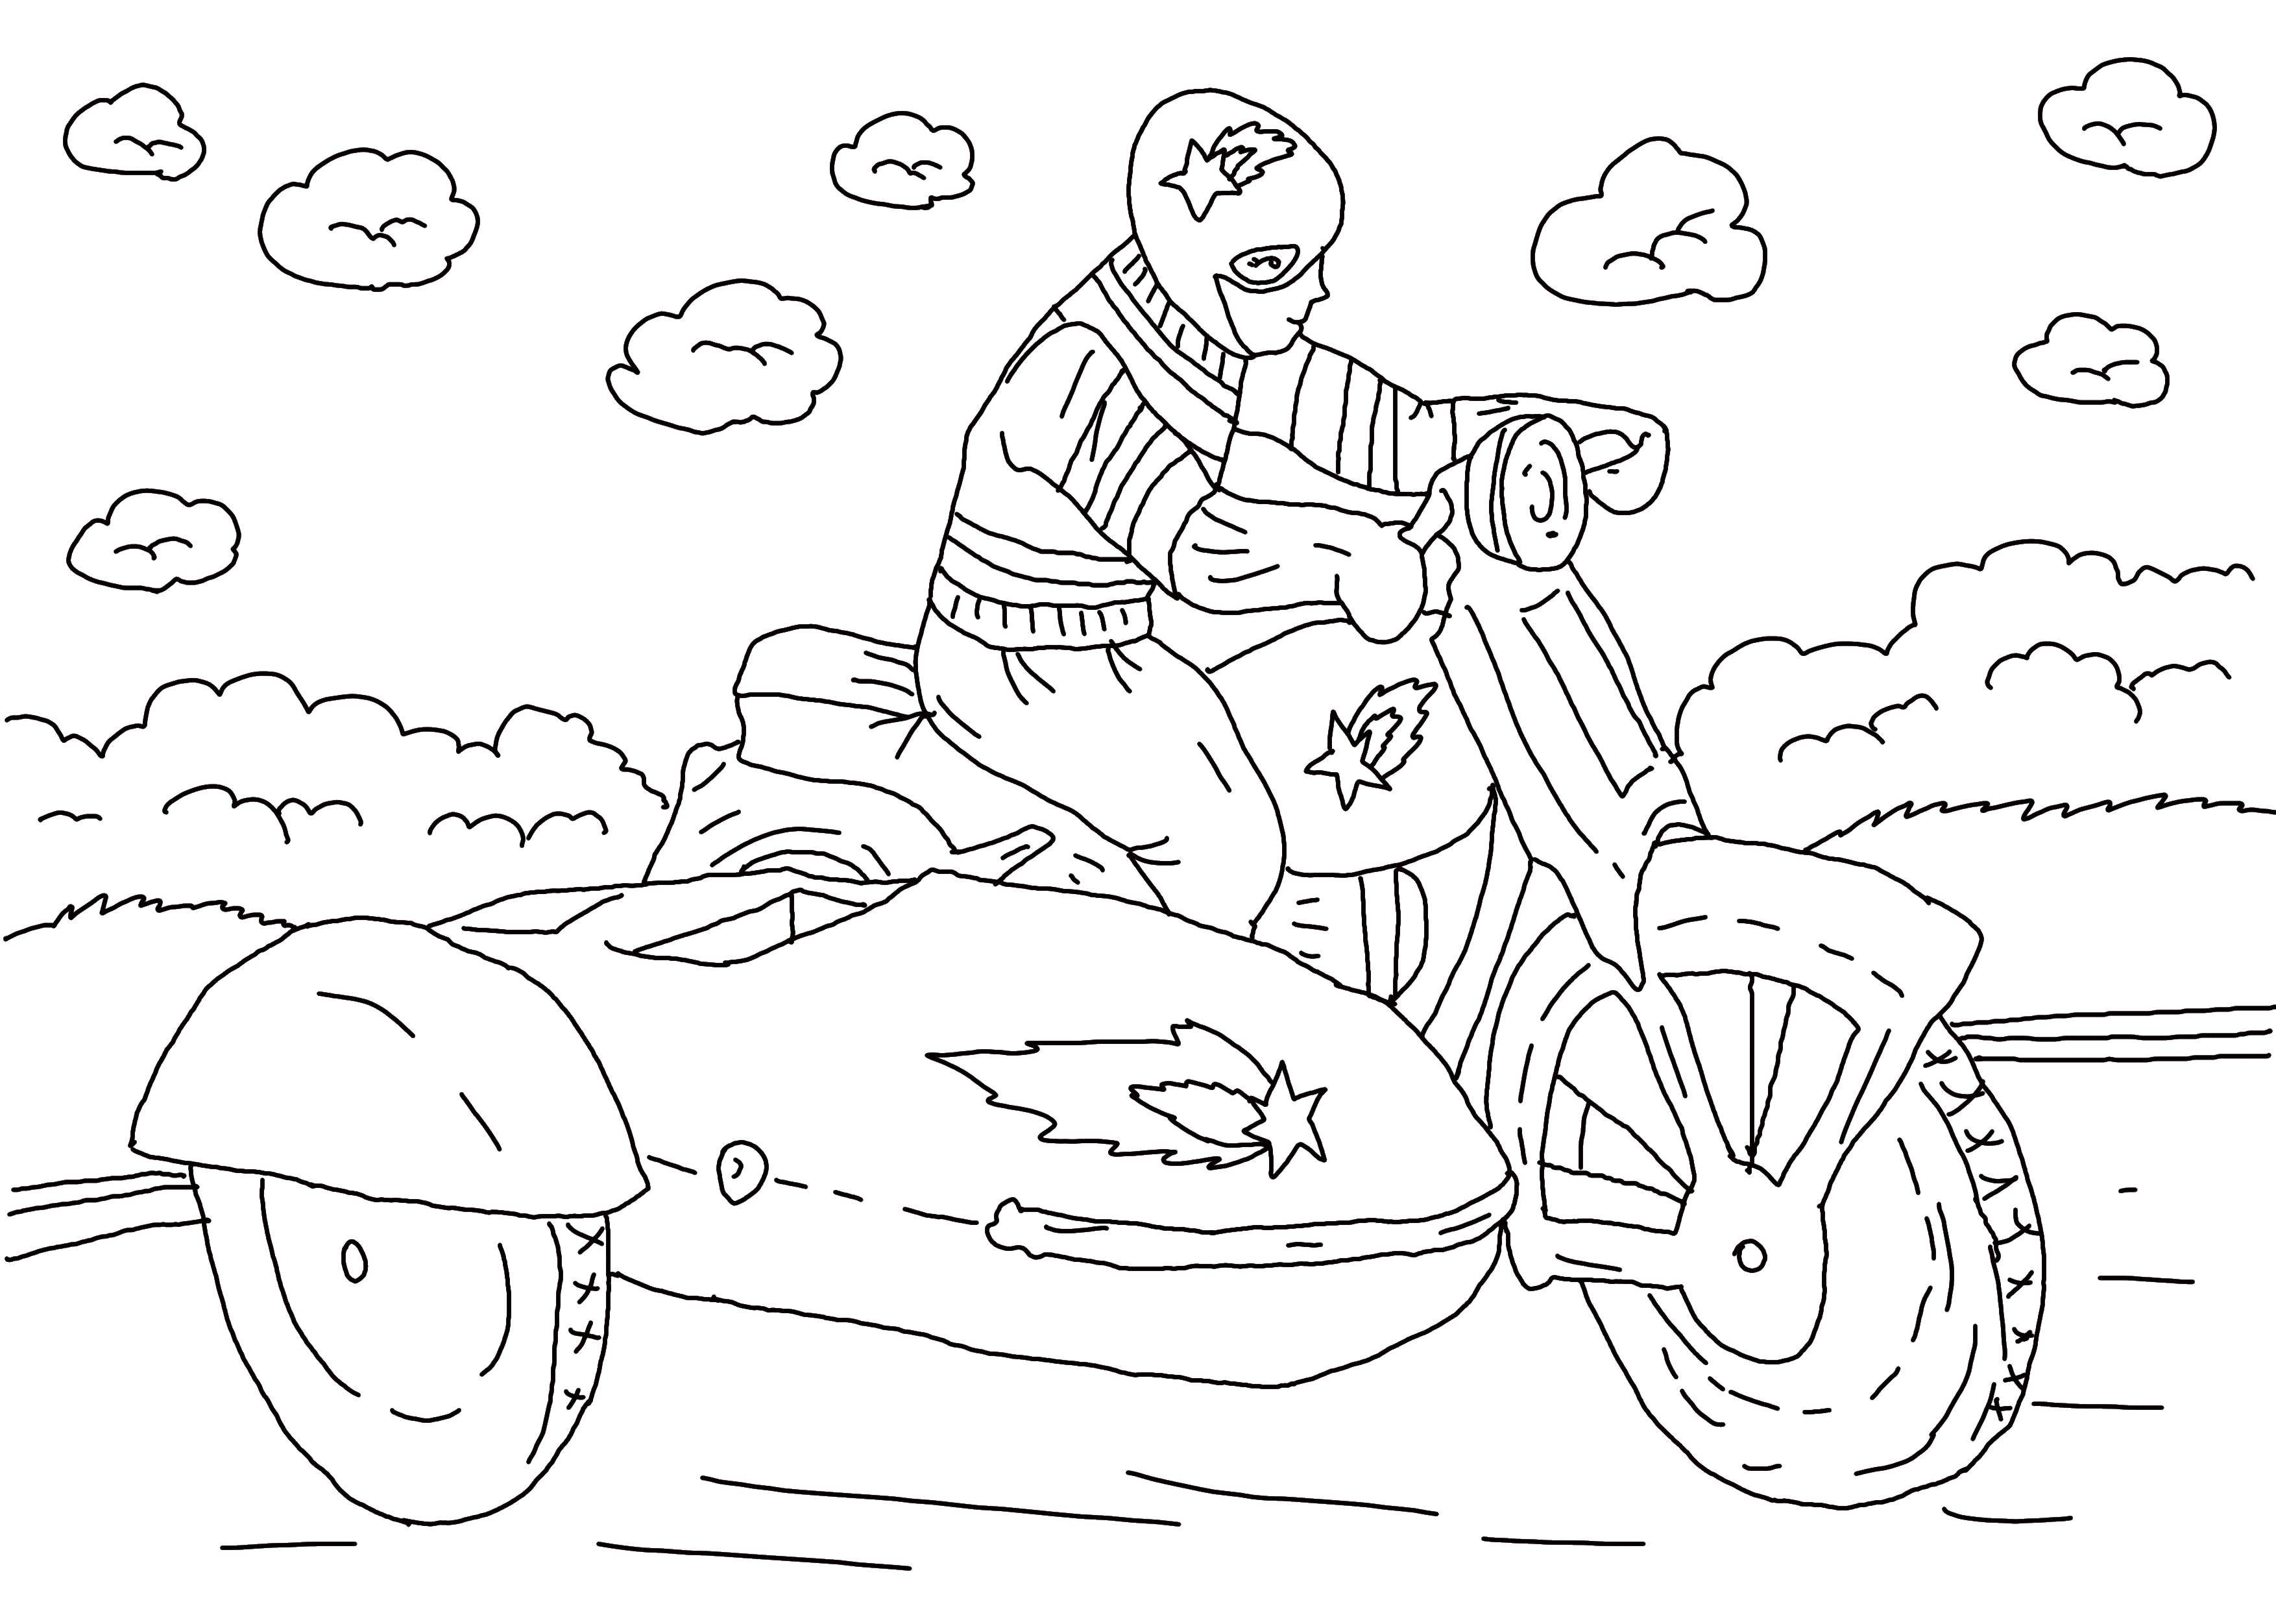 Розмальовки  Хлопець на мотоциклі. Завантажити розмальовку мотоцикл, хлопець, дорога.  Роздрукувати ,транспорт,